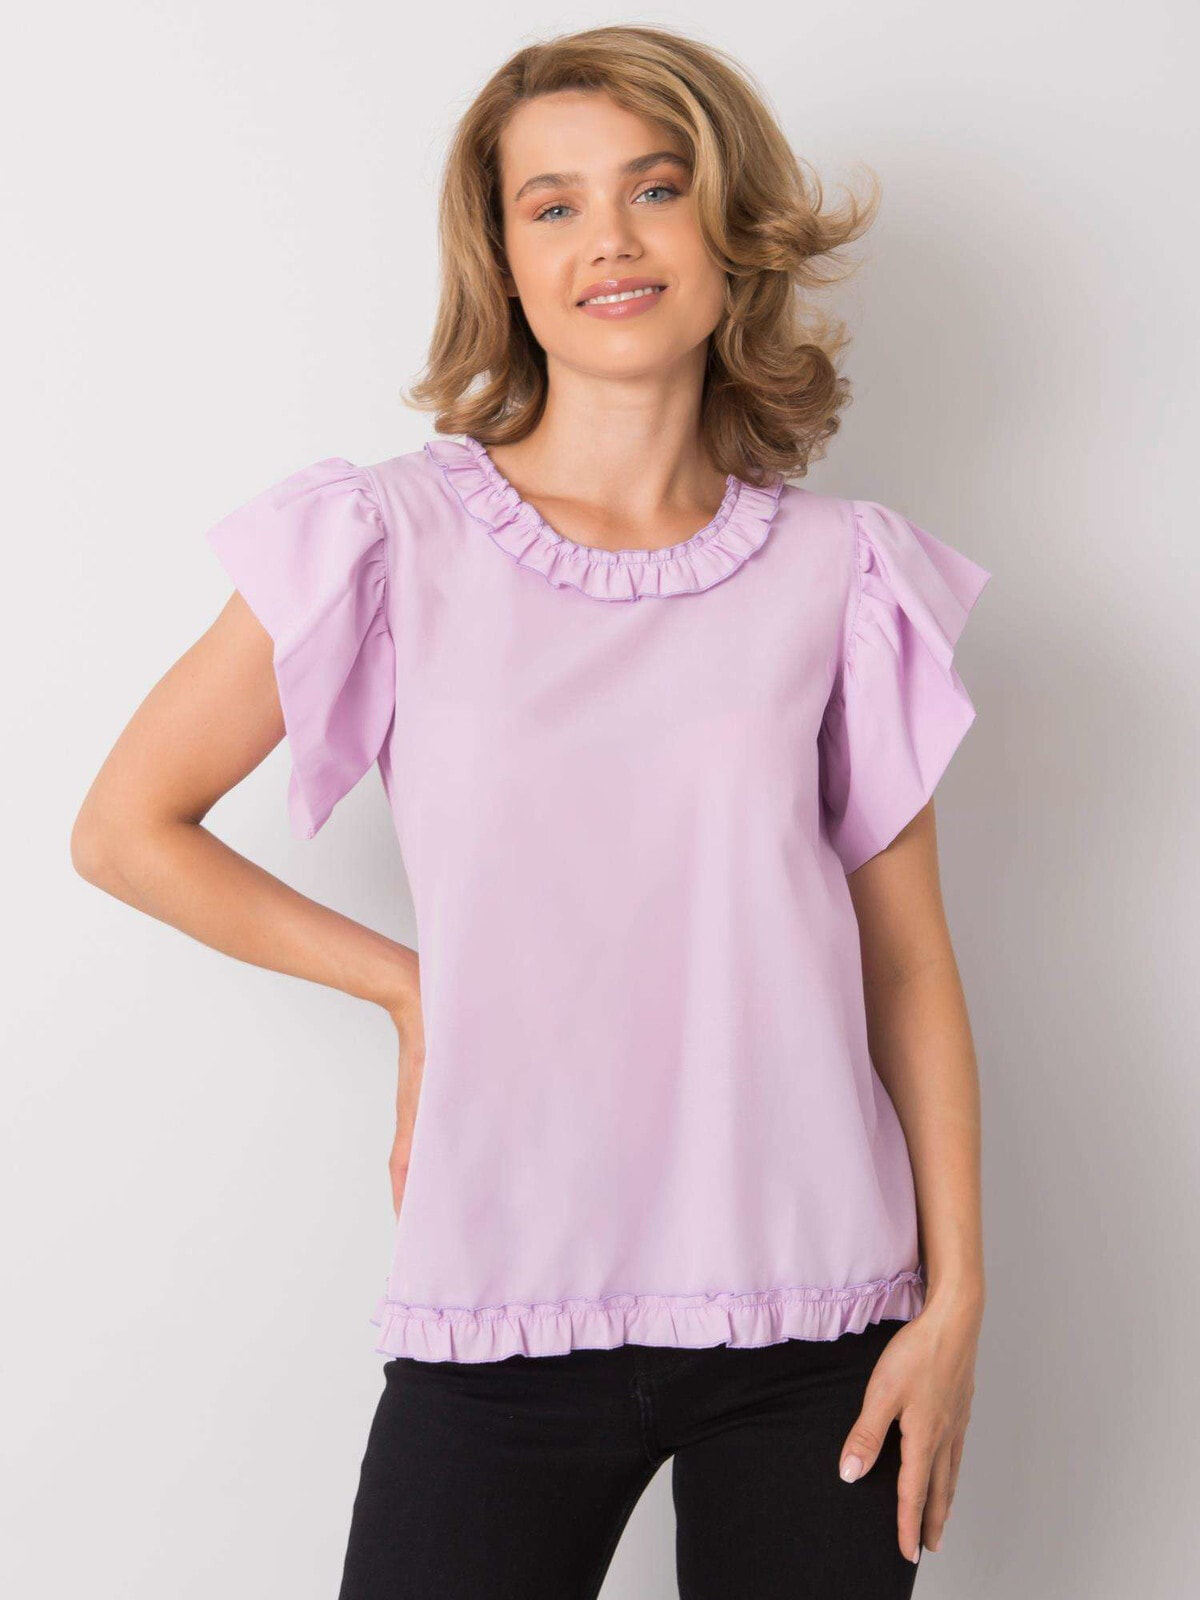 Женская блузка с коротким объемным рукавом светло-фиолетовая Factory Price